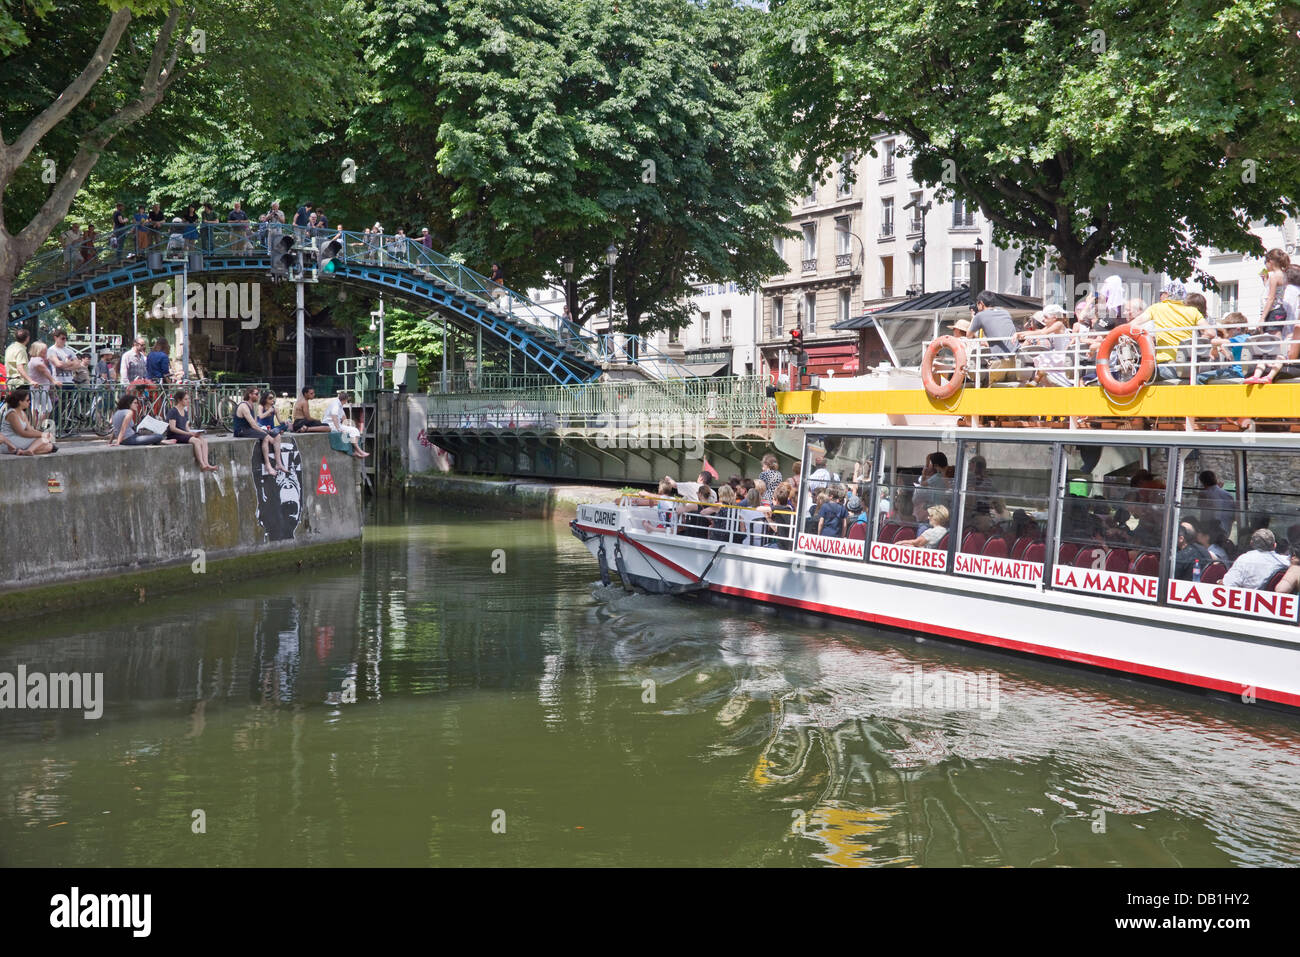 L'ouverture du pont tournant pour un bateau de croisière touristique sur le canal St-Martin, près de l'hôtel du nord - Paris, France Banque D'Images